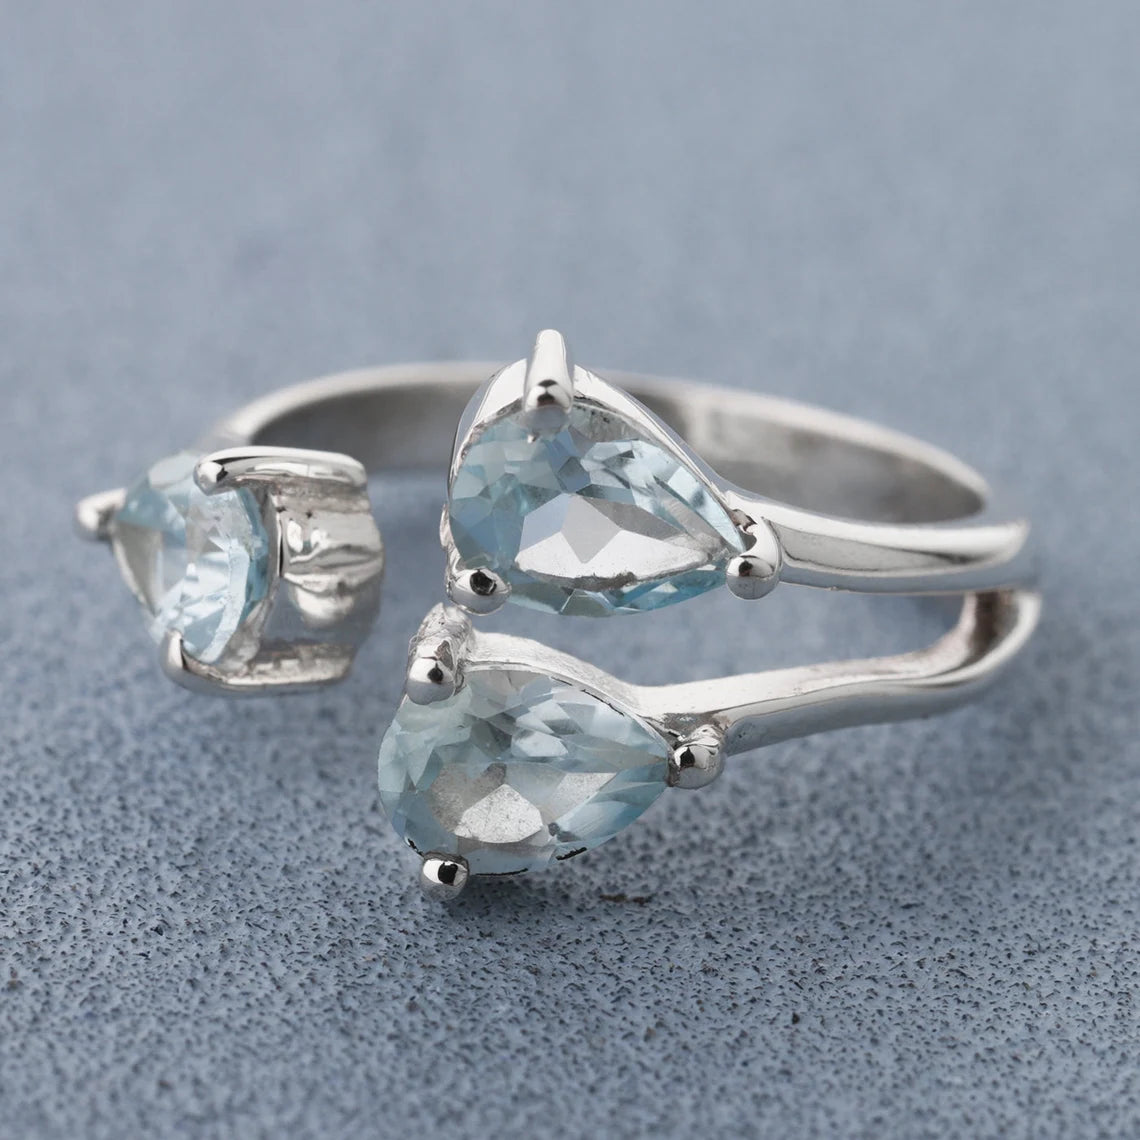 Peridot Ring Smoky iolite Ring Amethyst Ring Blue Topaz Citrine Ring Natural Peridot, Smoky, iolite, Amethyst, Blue Topaz Citrine Rings